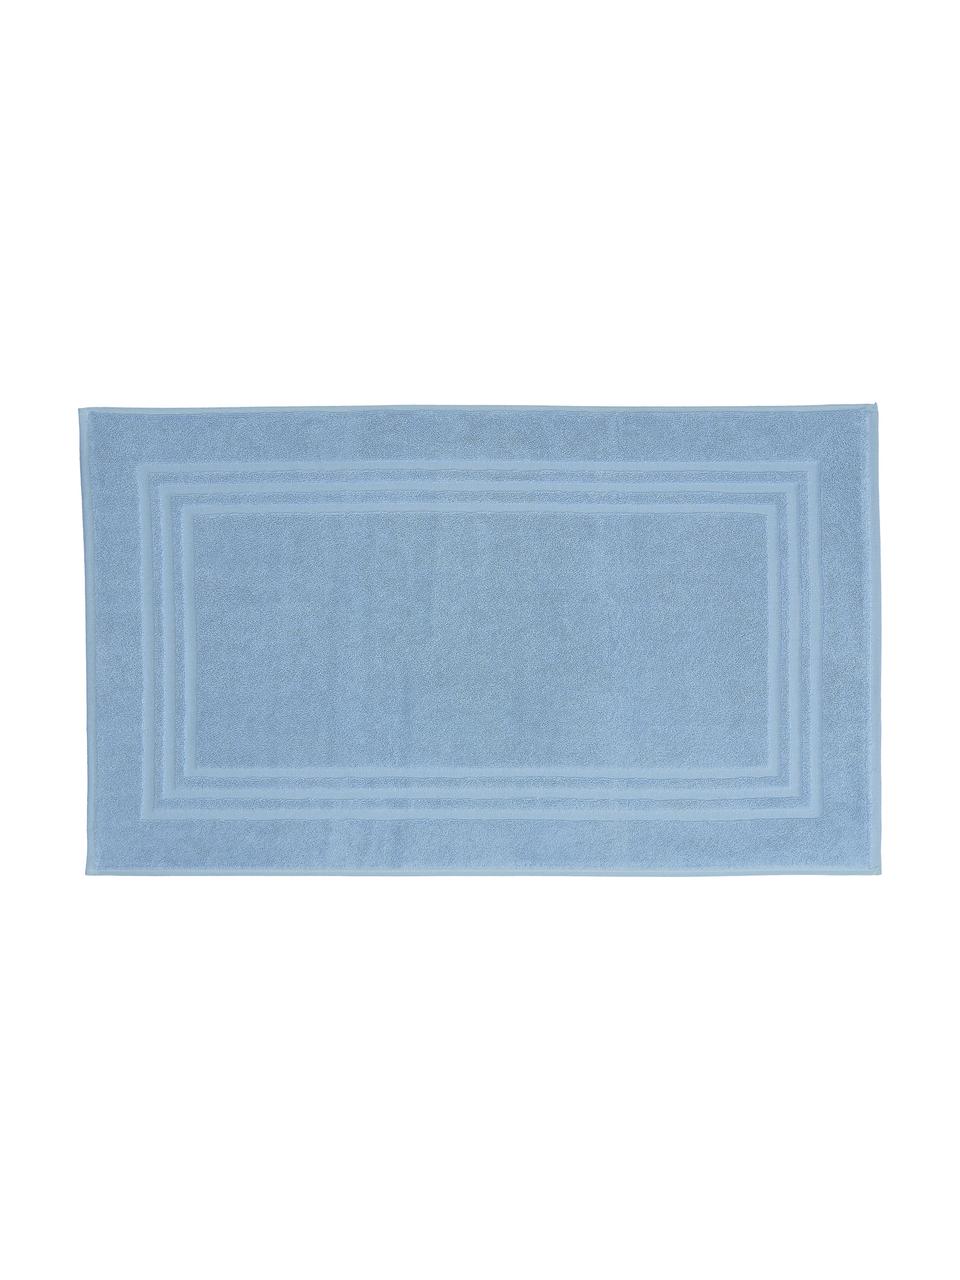 Alfombrilla de baño Gentle, 100% algodón, Azul hielo, An 50 x L 80 cm